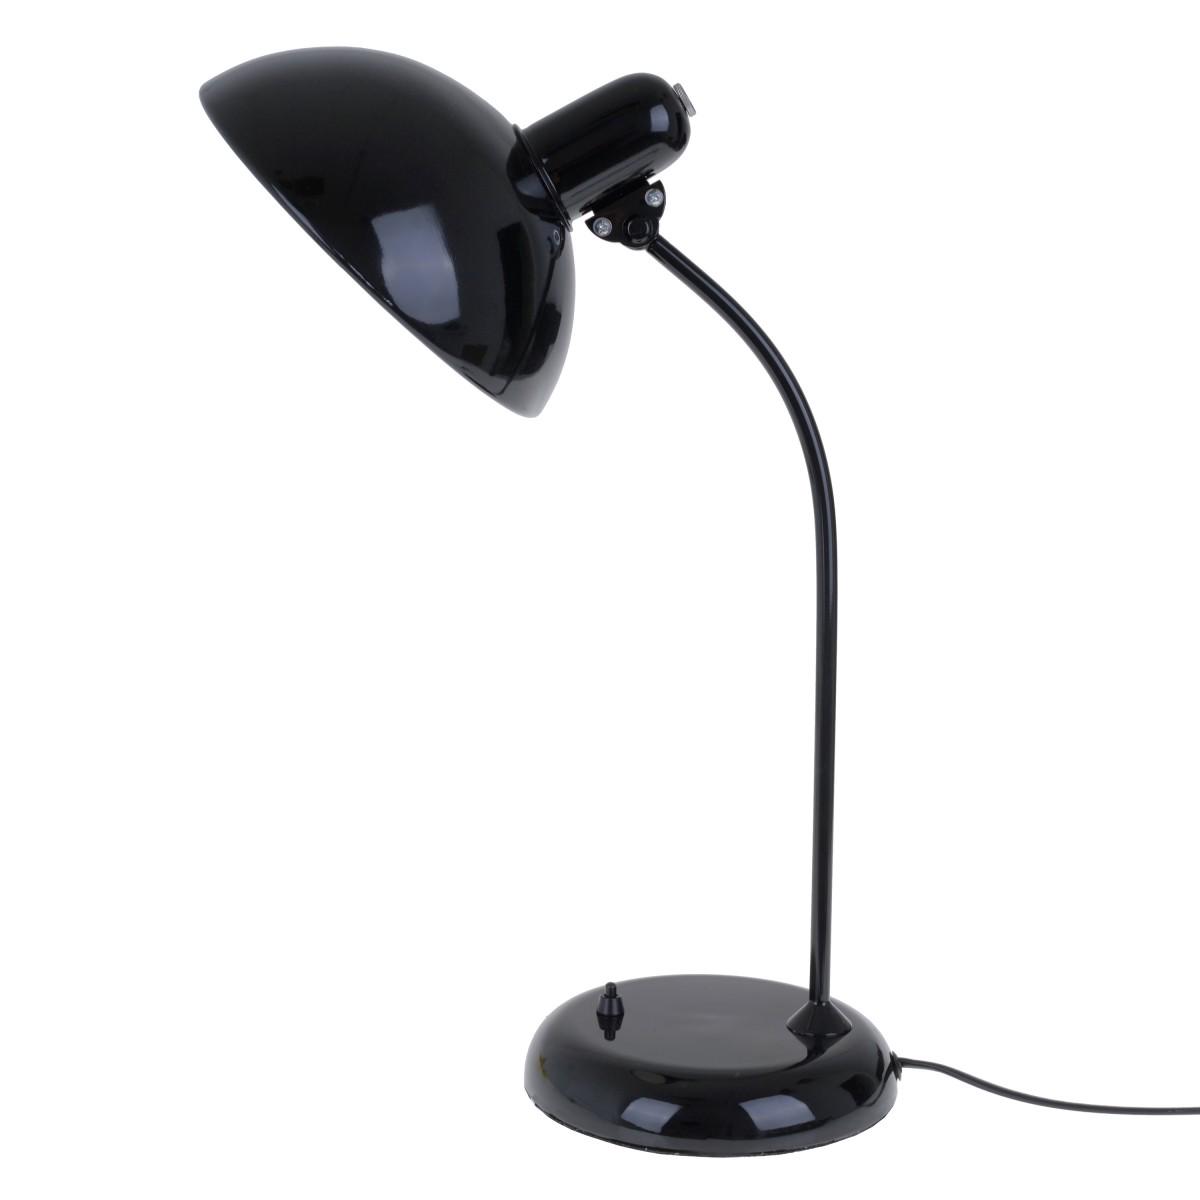 Купить настольную лампу для школьника недорого в интернет-магазине Практик